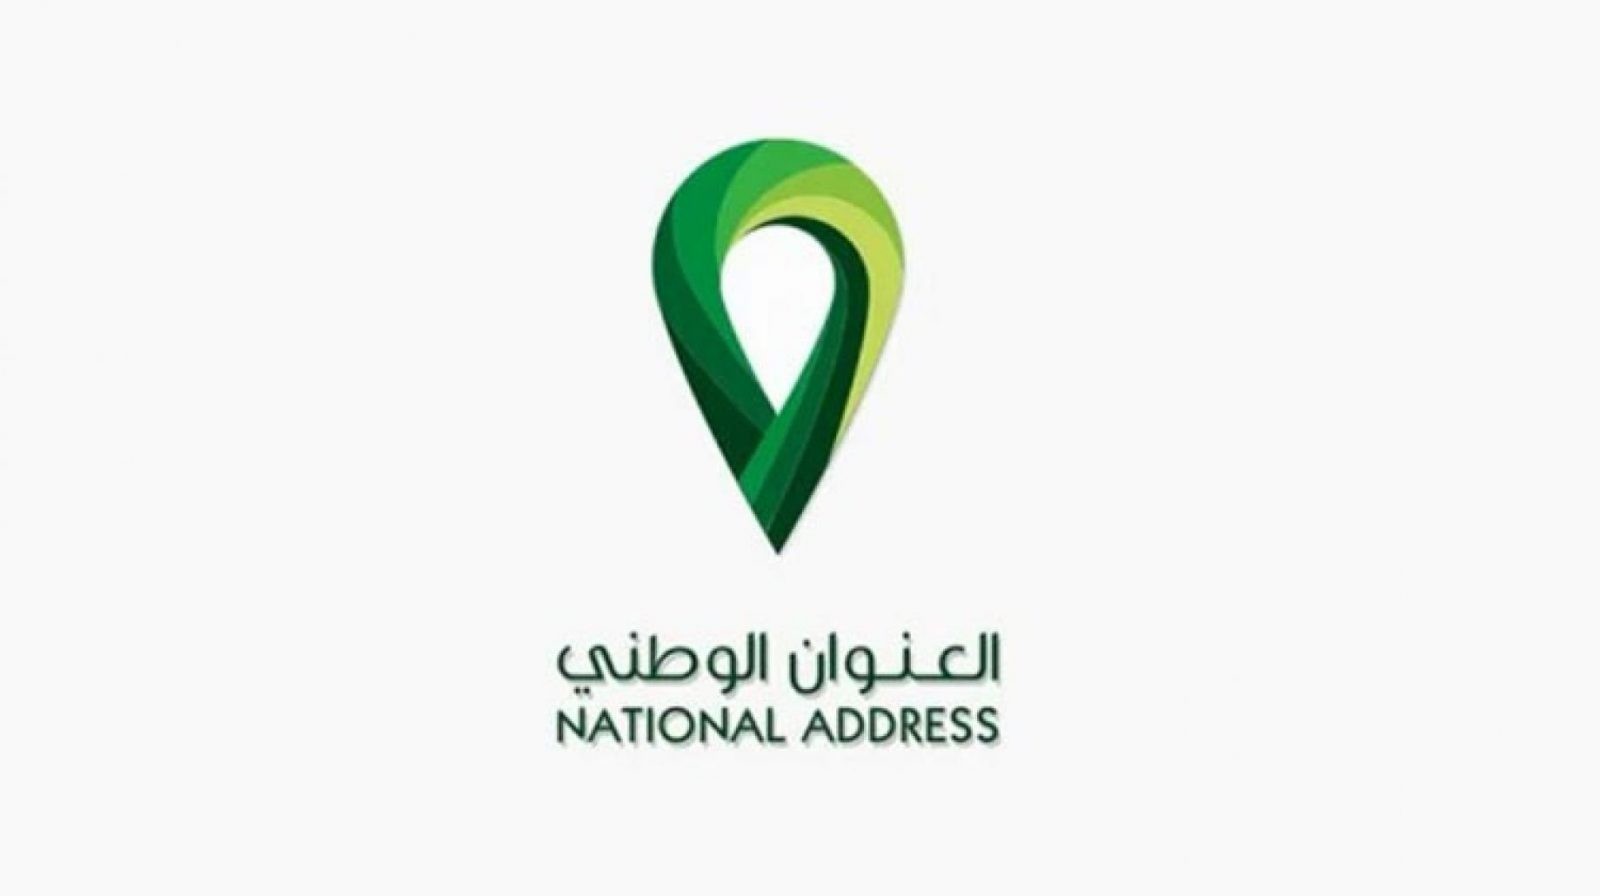 كيفية التسجيل بالعنوان الوطني للمؤسسة 1443 في السعودية